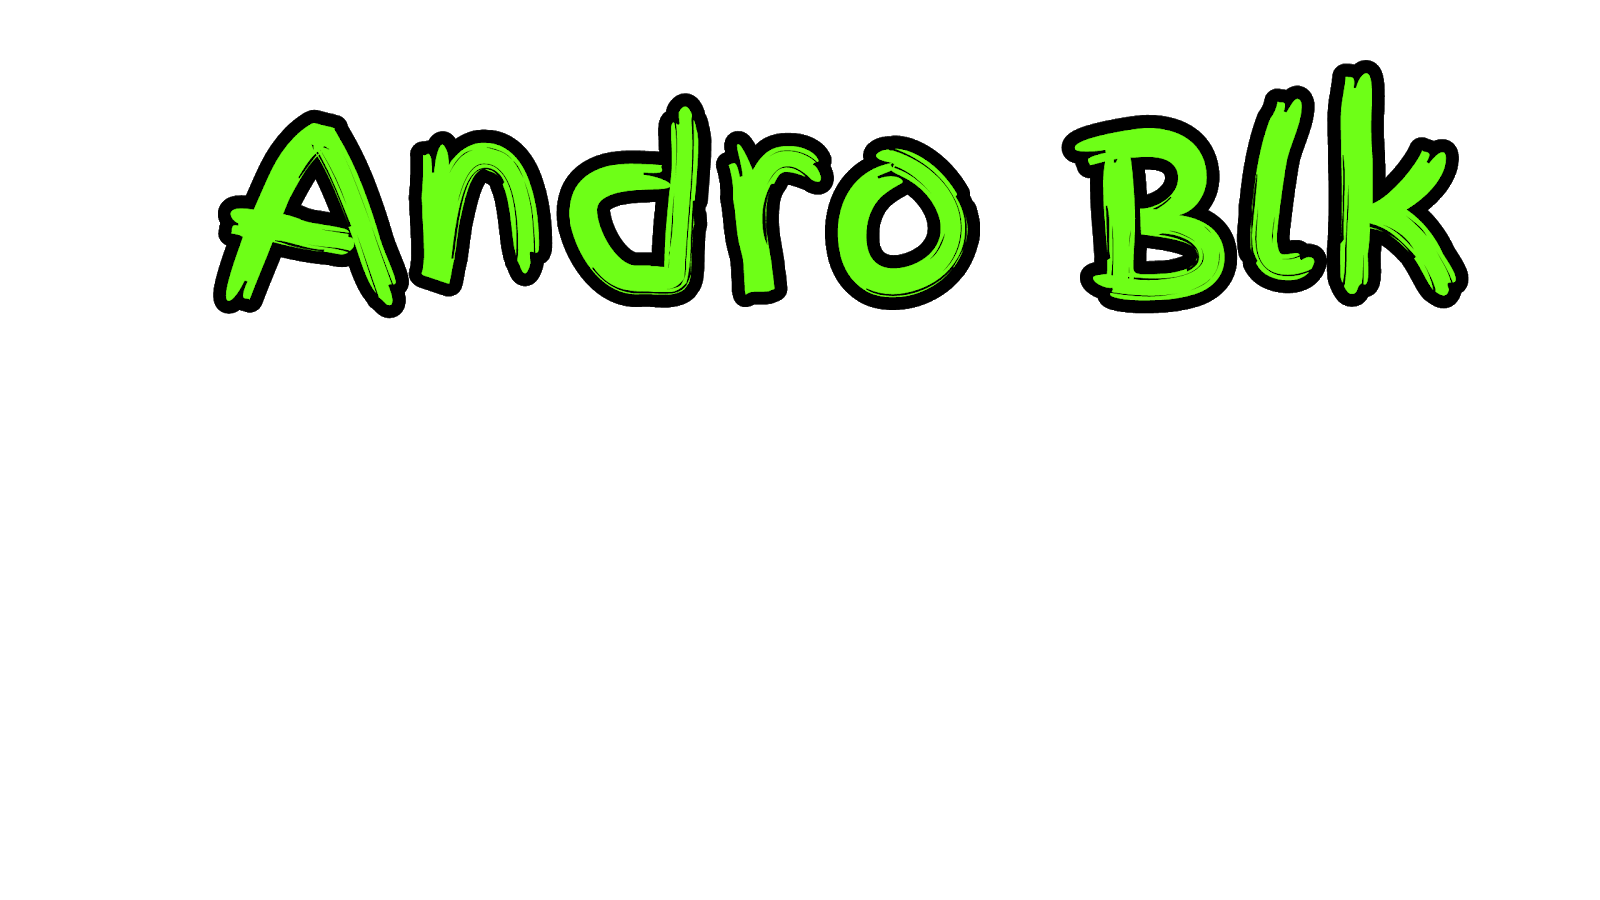 Andro Blk | Download Game Dan Mod Apk Gratis